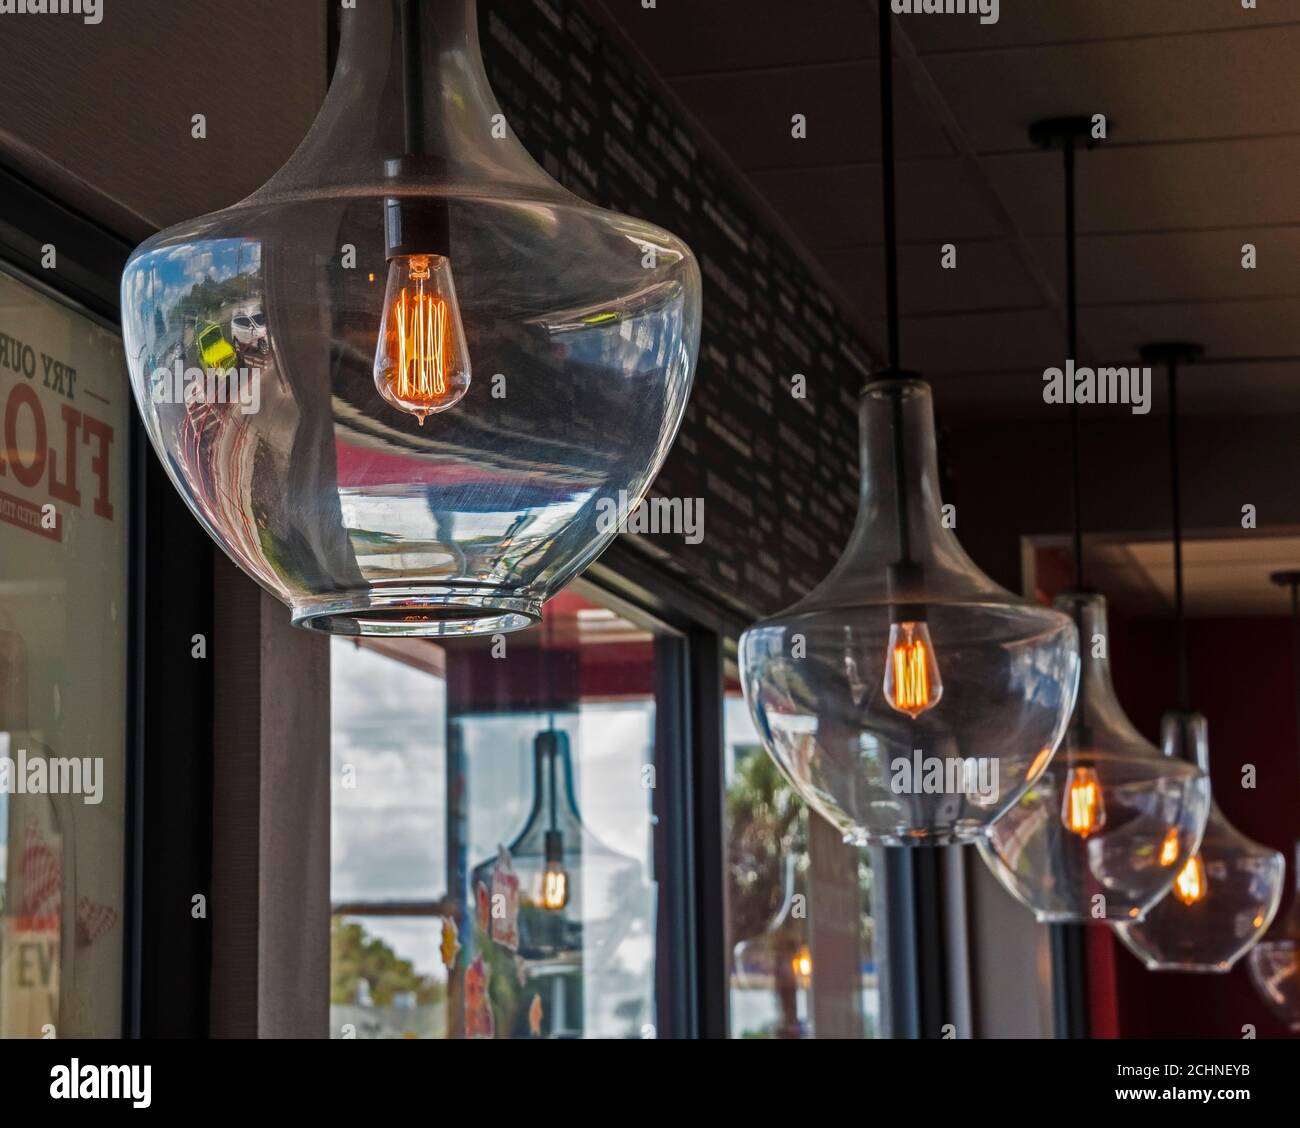 La lampadina a filamento ispirata a Thomas Edison, dal look retrò, risplende in un mondo appeso in un ristorante. Foto Stock